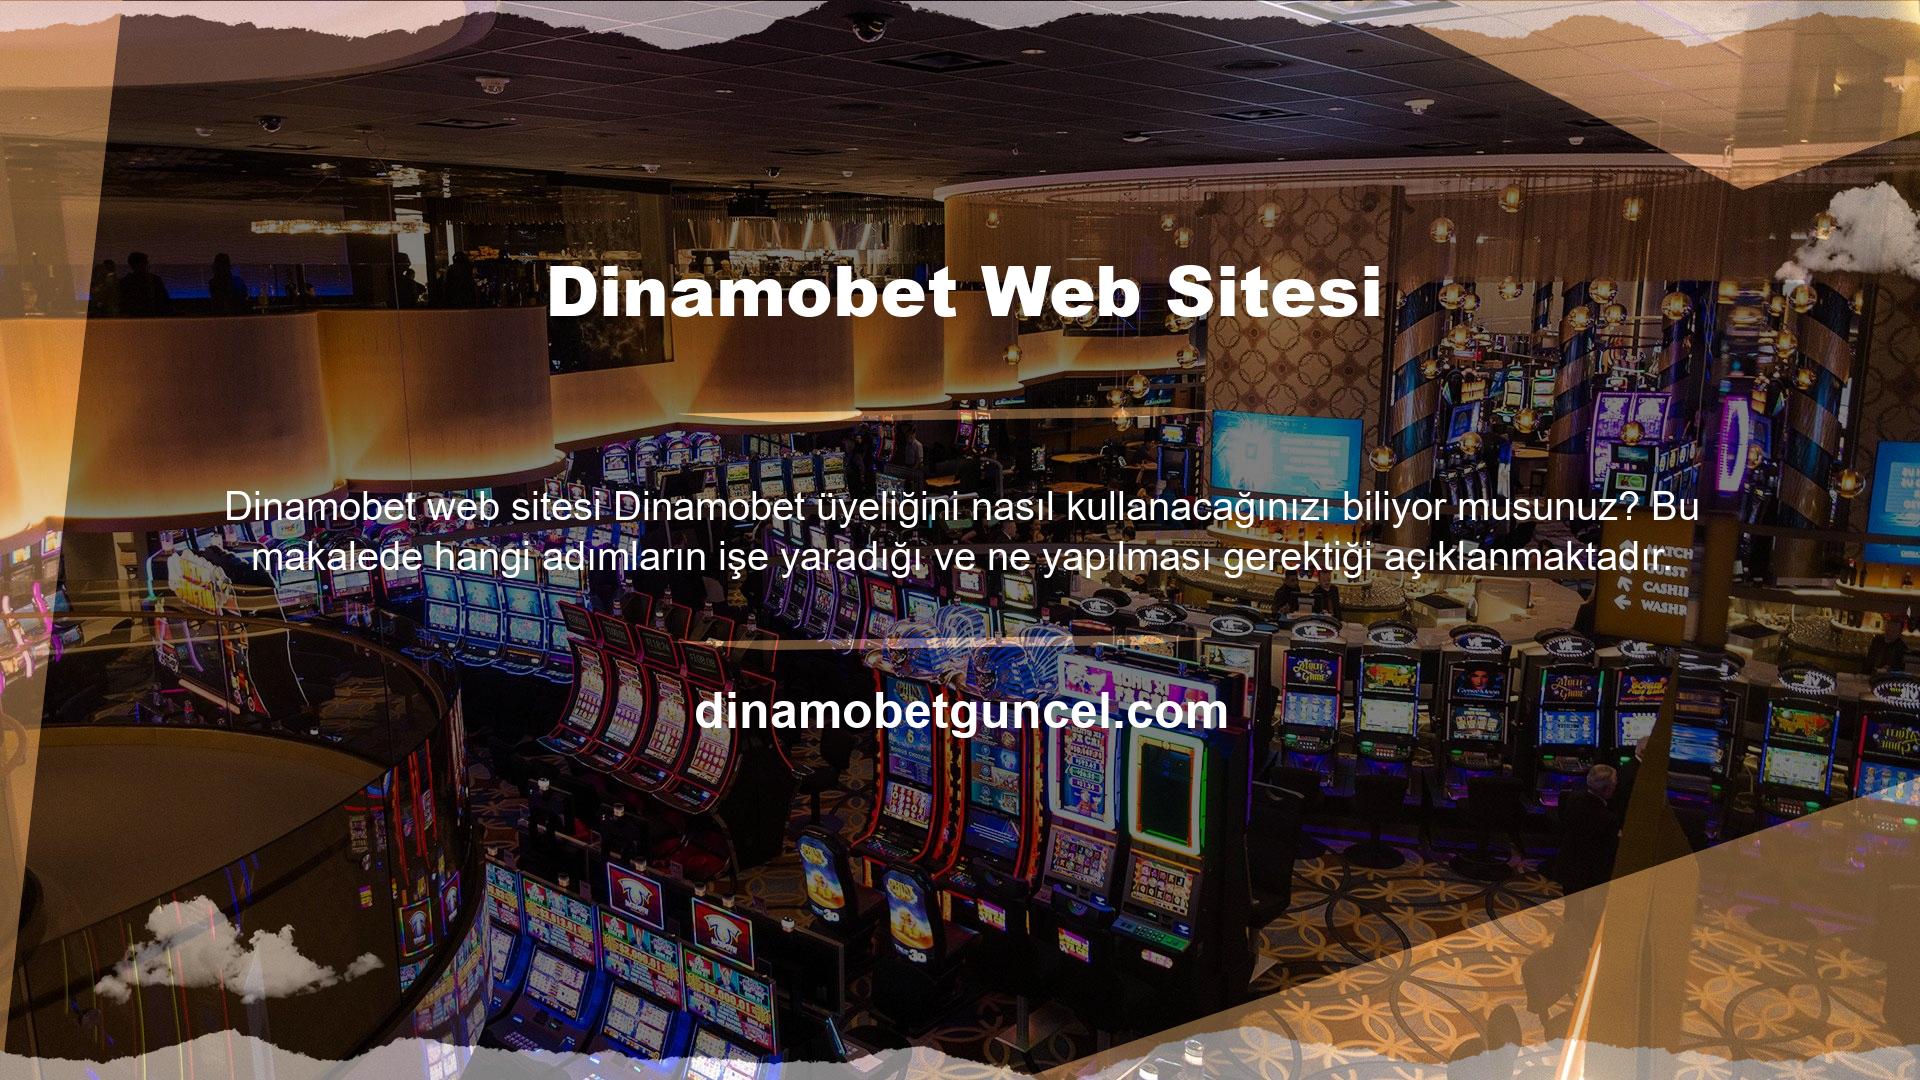 Güvenilir ve kazançlı sitelerden biri olduğu için Dinamobet sitesini tercih edebilirsiniz